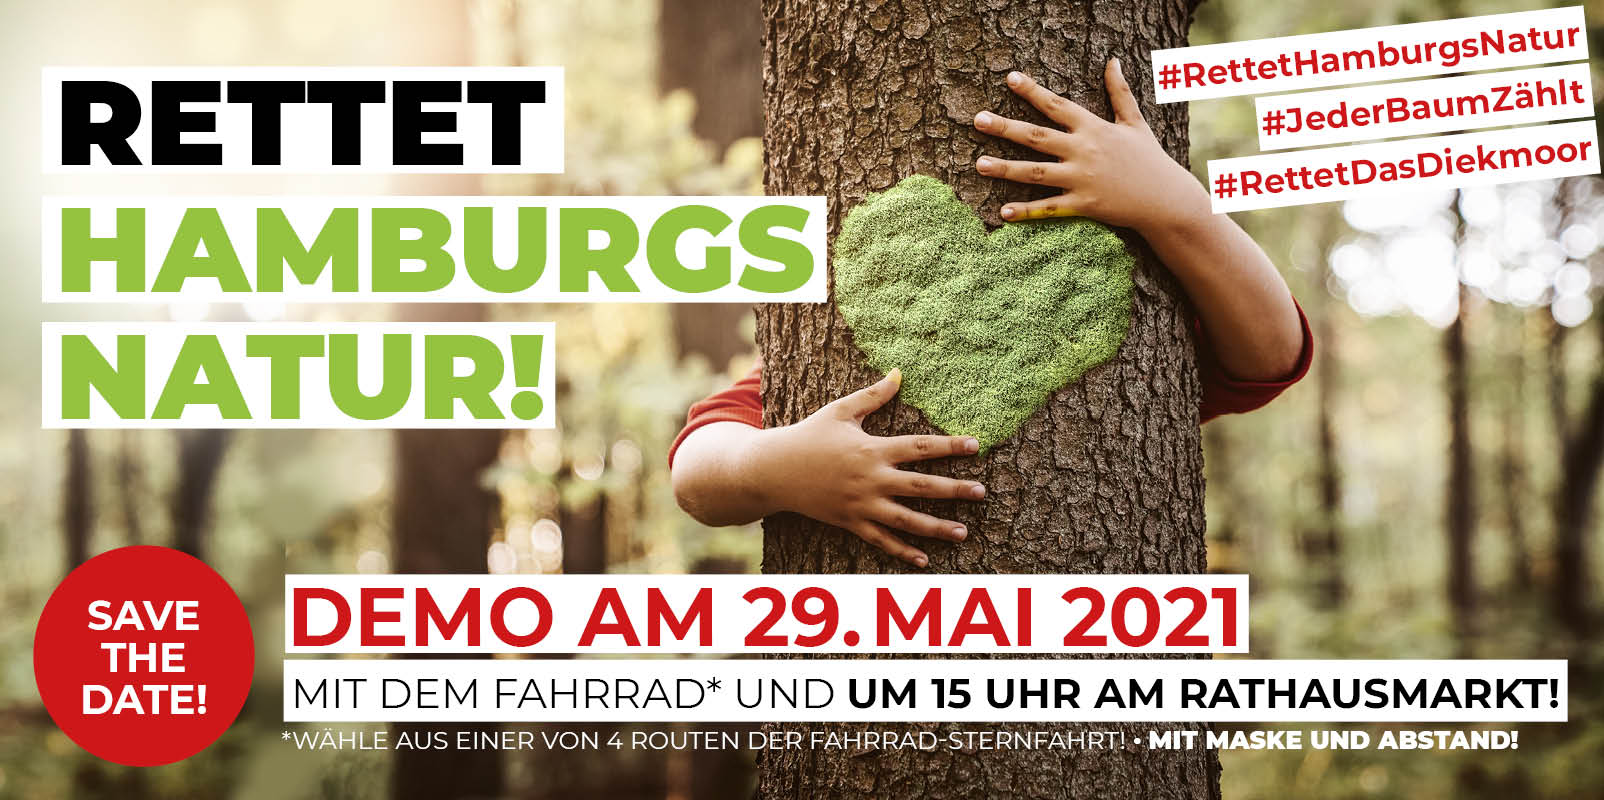 Demo 29. Mai - Rettet Hamburgs Natur! Für ein grünes Hamburg! Jeder Baum zählt!